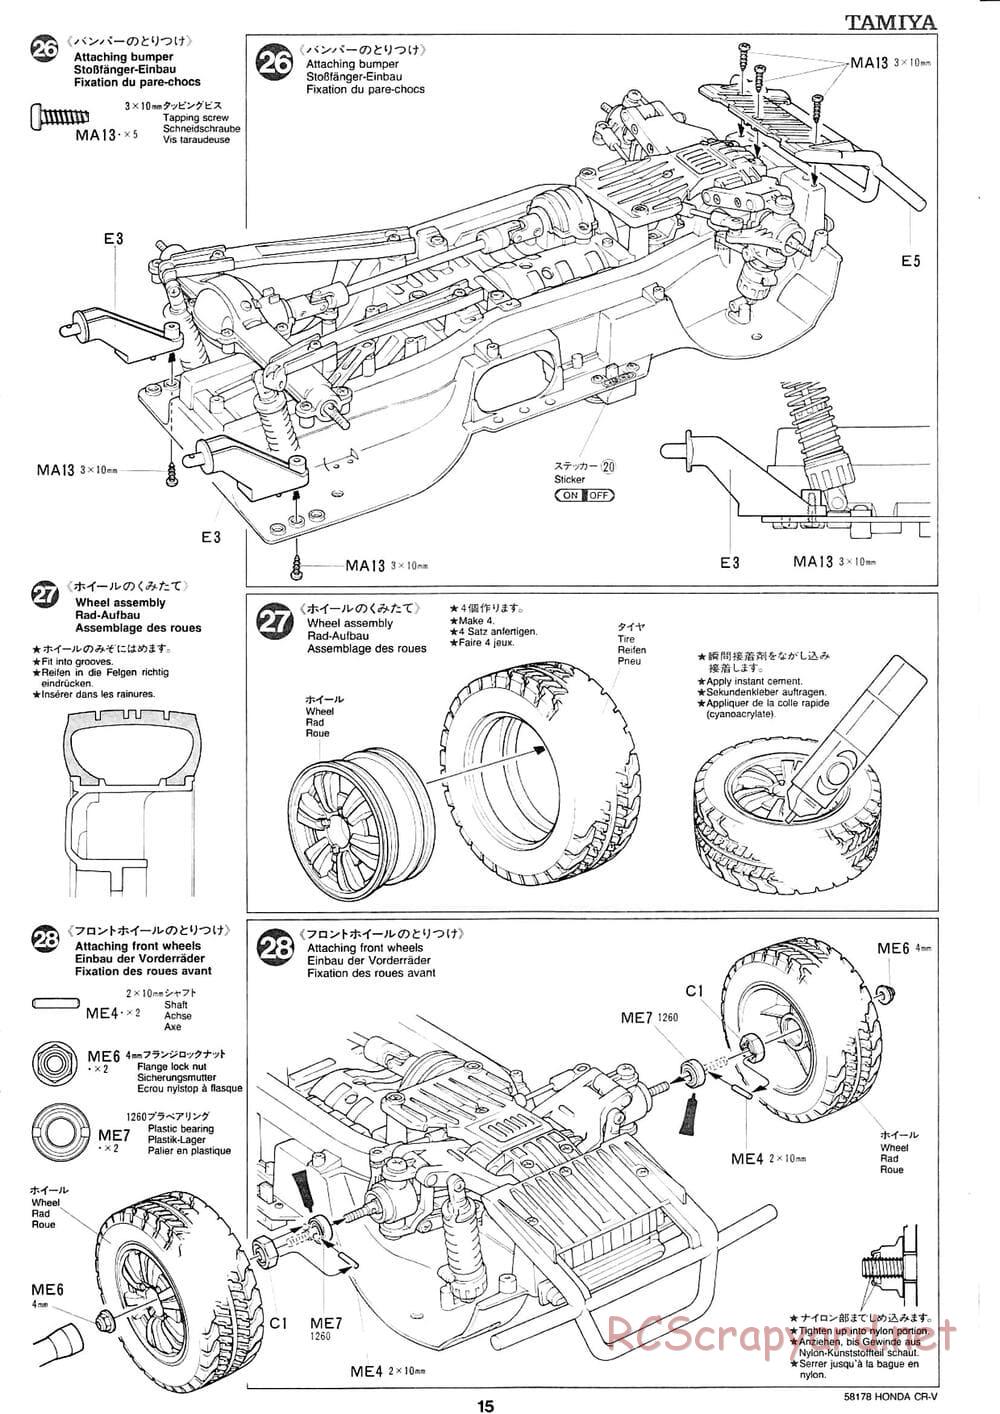 Tamiya - Honda CR-V - CC-01 Chassis - Manual - Page 15